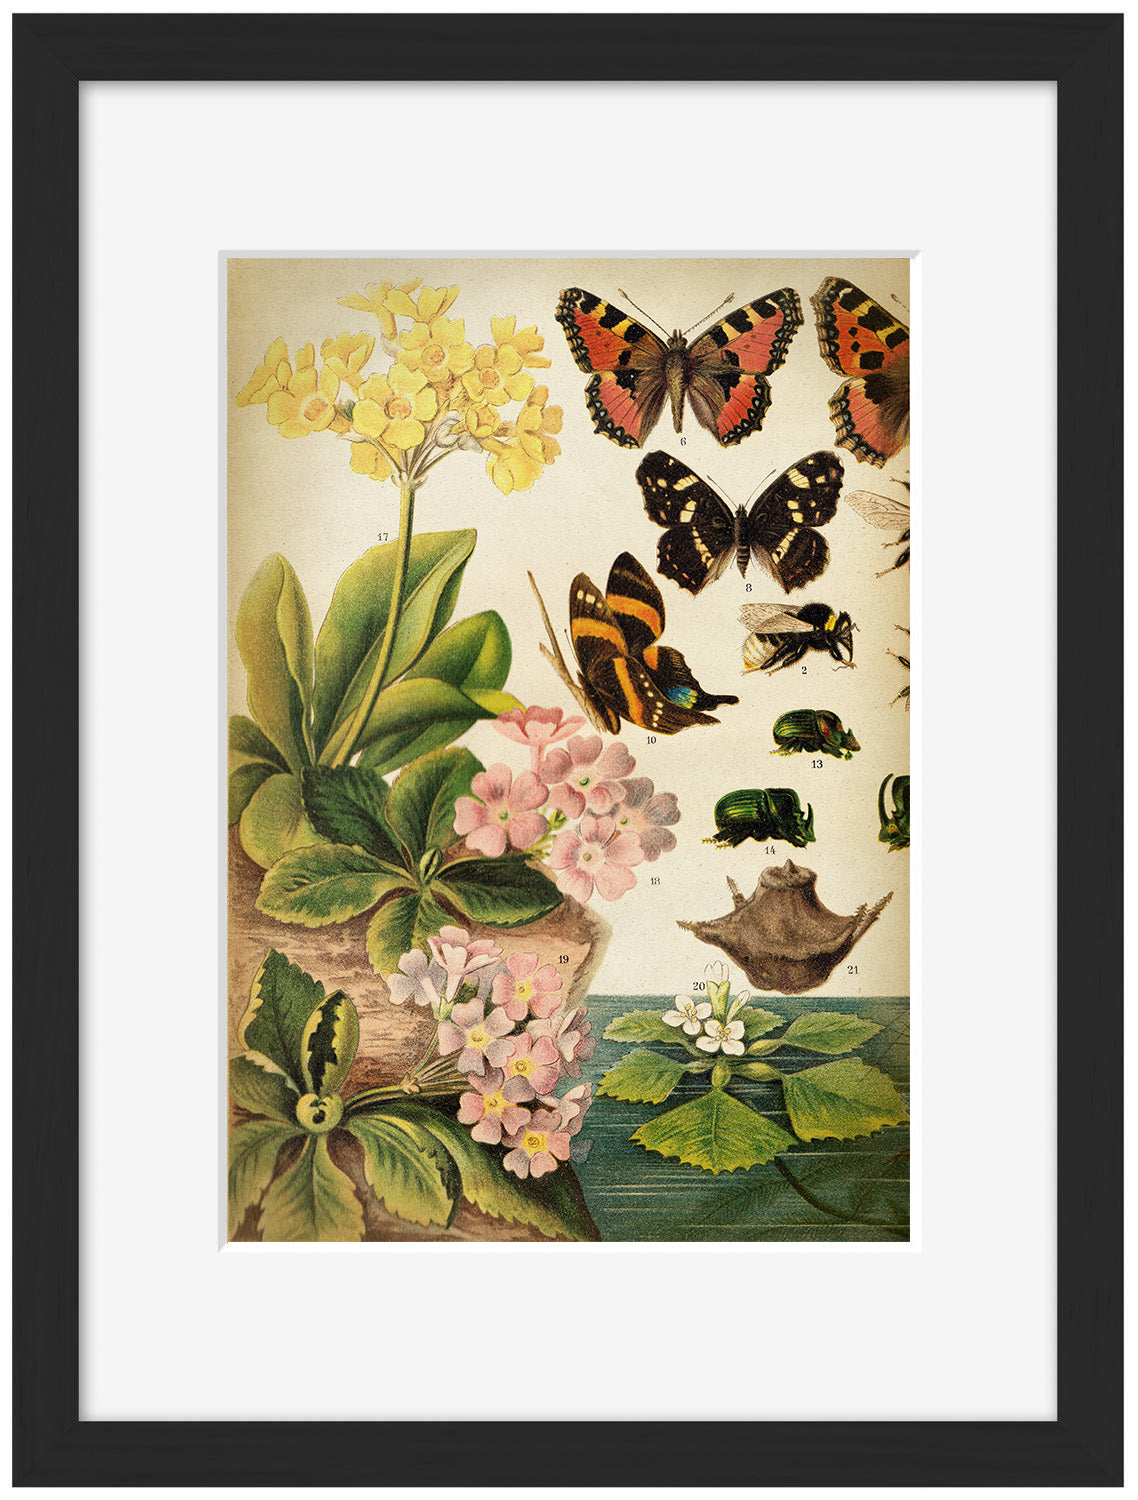 Butterflies Darwinism 1-botanical, print-Framed Print-30 x 40 cm-BLUE SHAKER